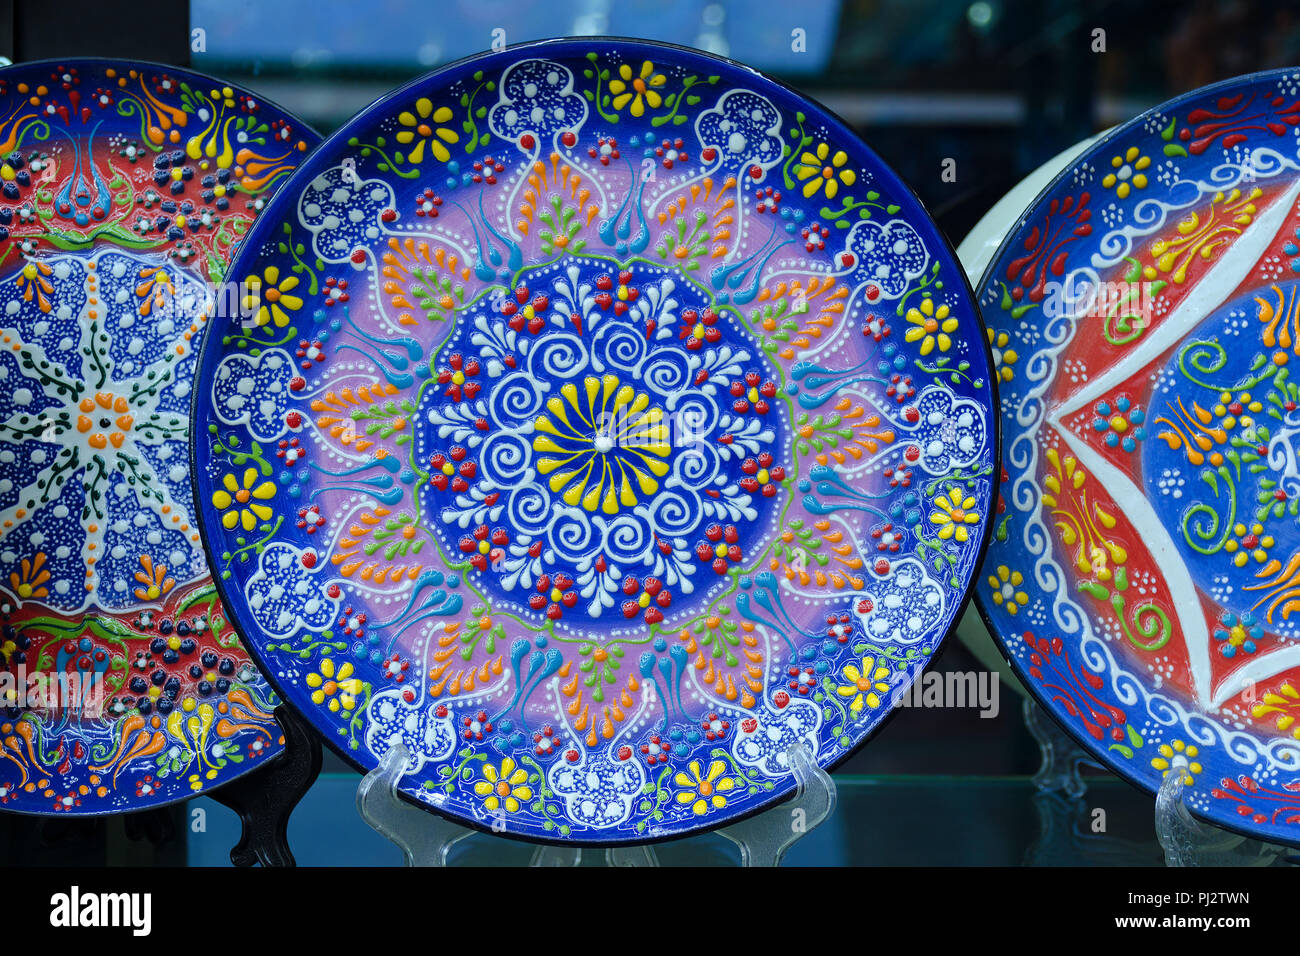 Belle assiette bleue avec motif floral traditionnel turc, peinture colorée  sur la vaisselle. Boutique de souvenirs Photo Stock - Alamy